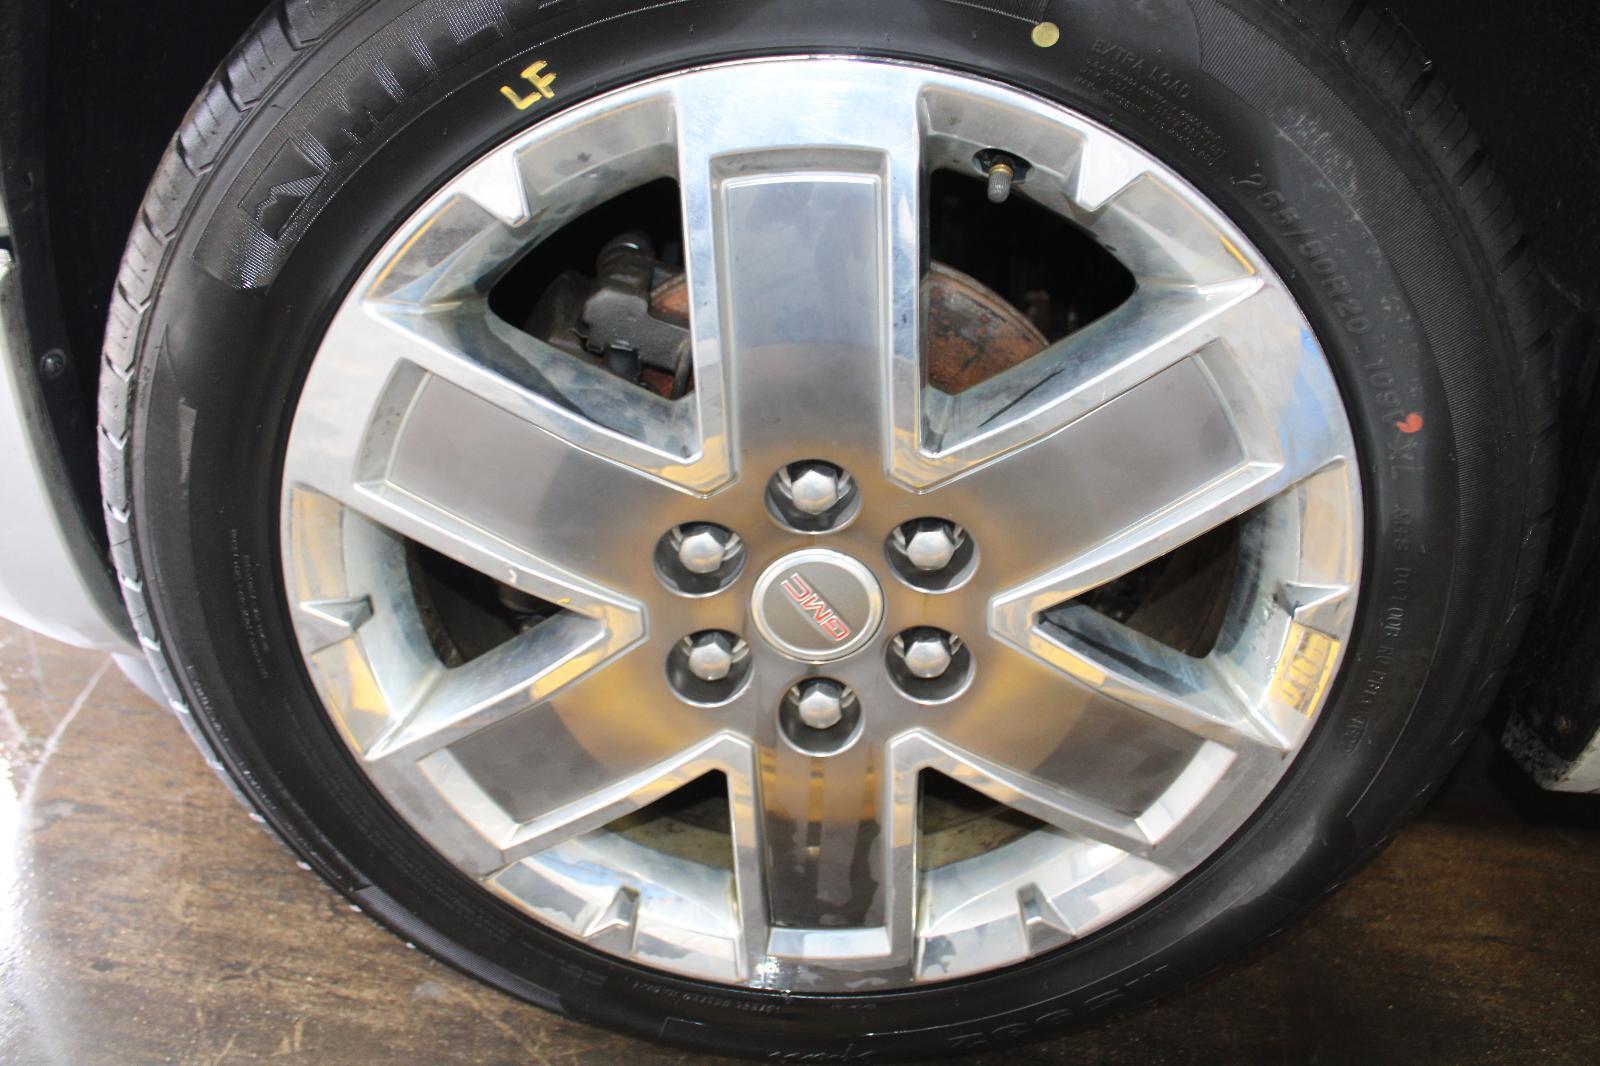 2012 GMC ACADIA (Wheel Rim) OEM NO TIRE 20x7-1/2 6 Spoke 6x132mm Chrome 6 Lug